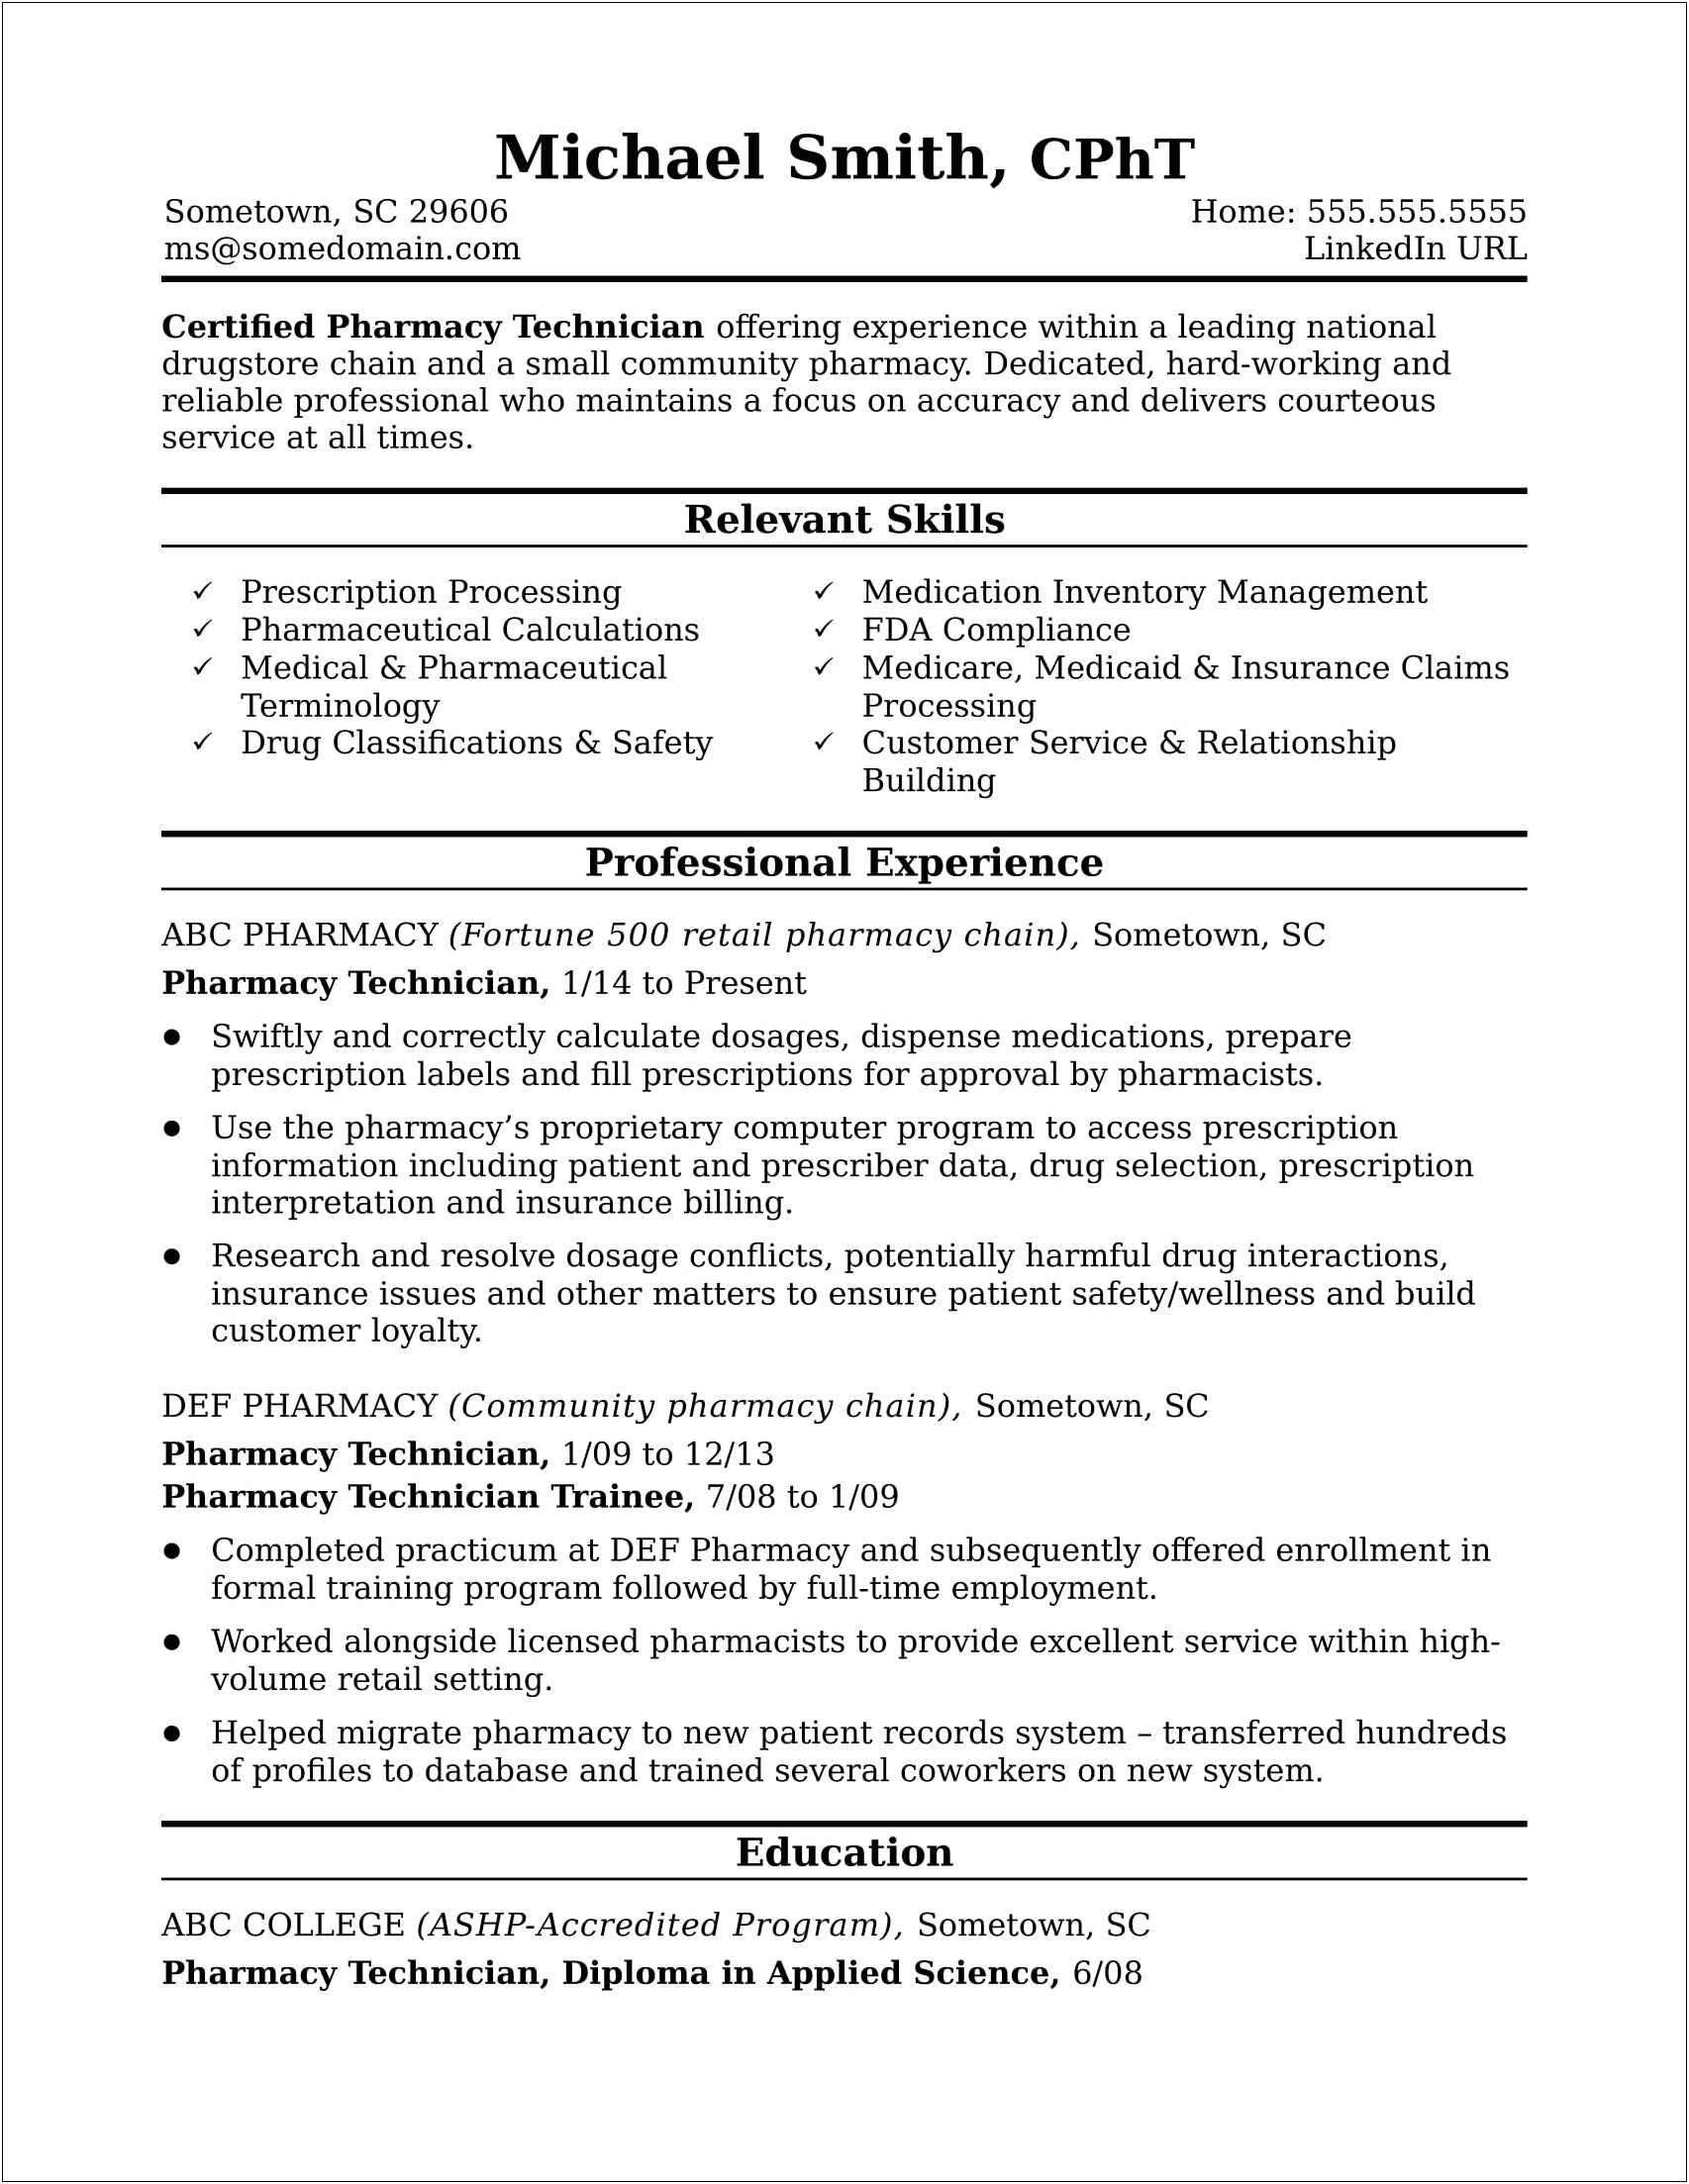 Cv Vs Resume In Applying For Pharmacy Jobs